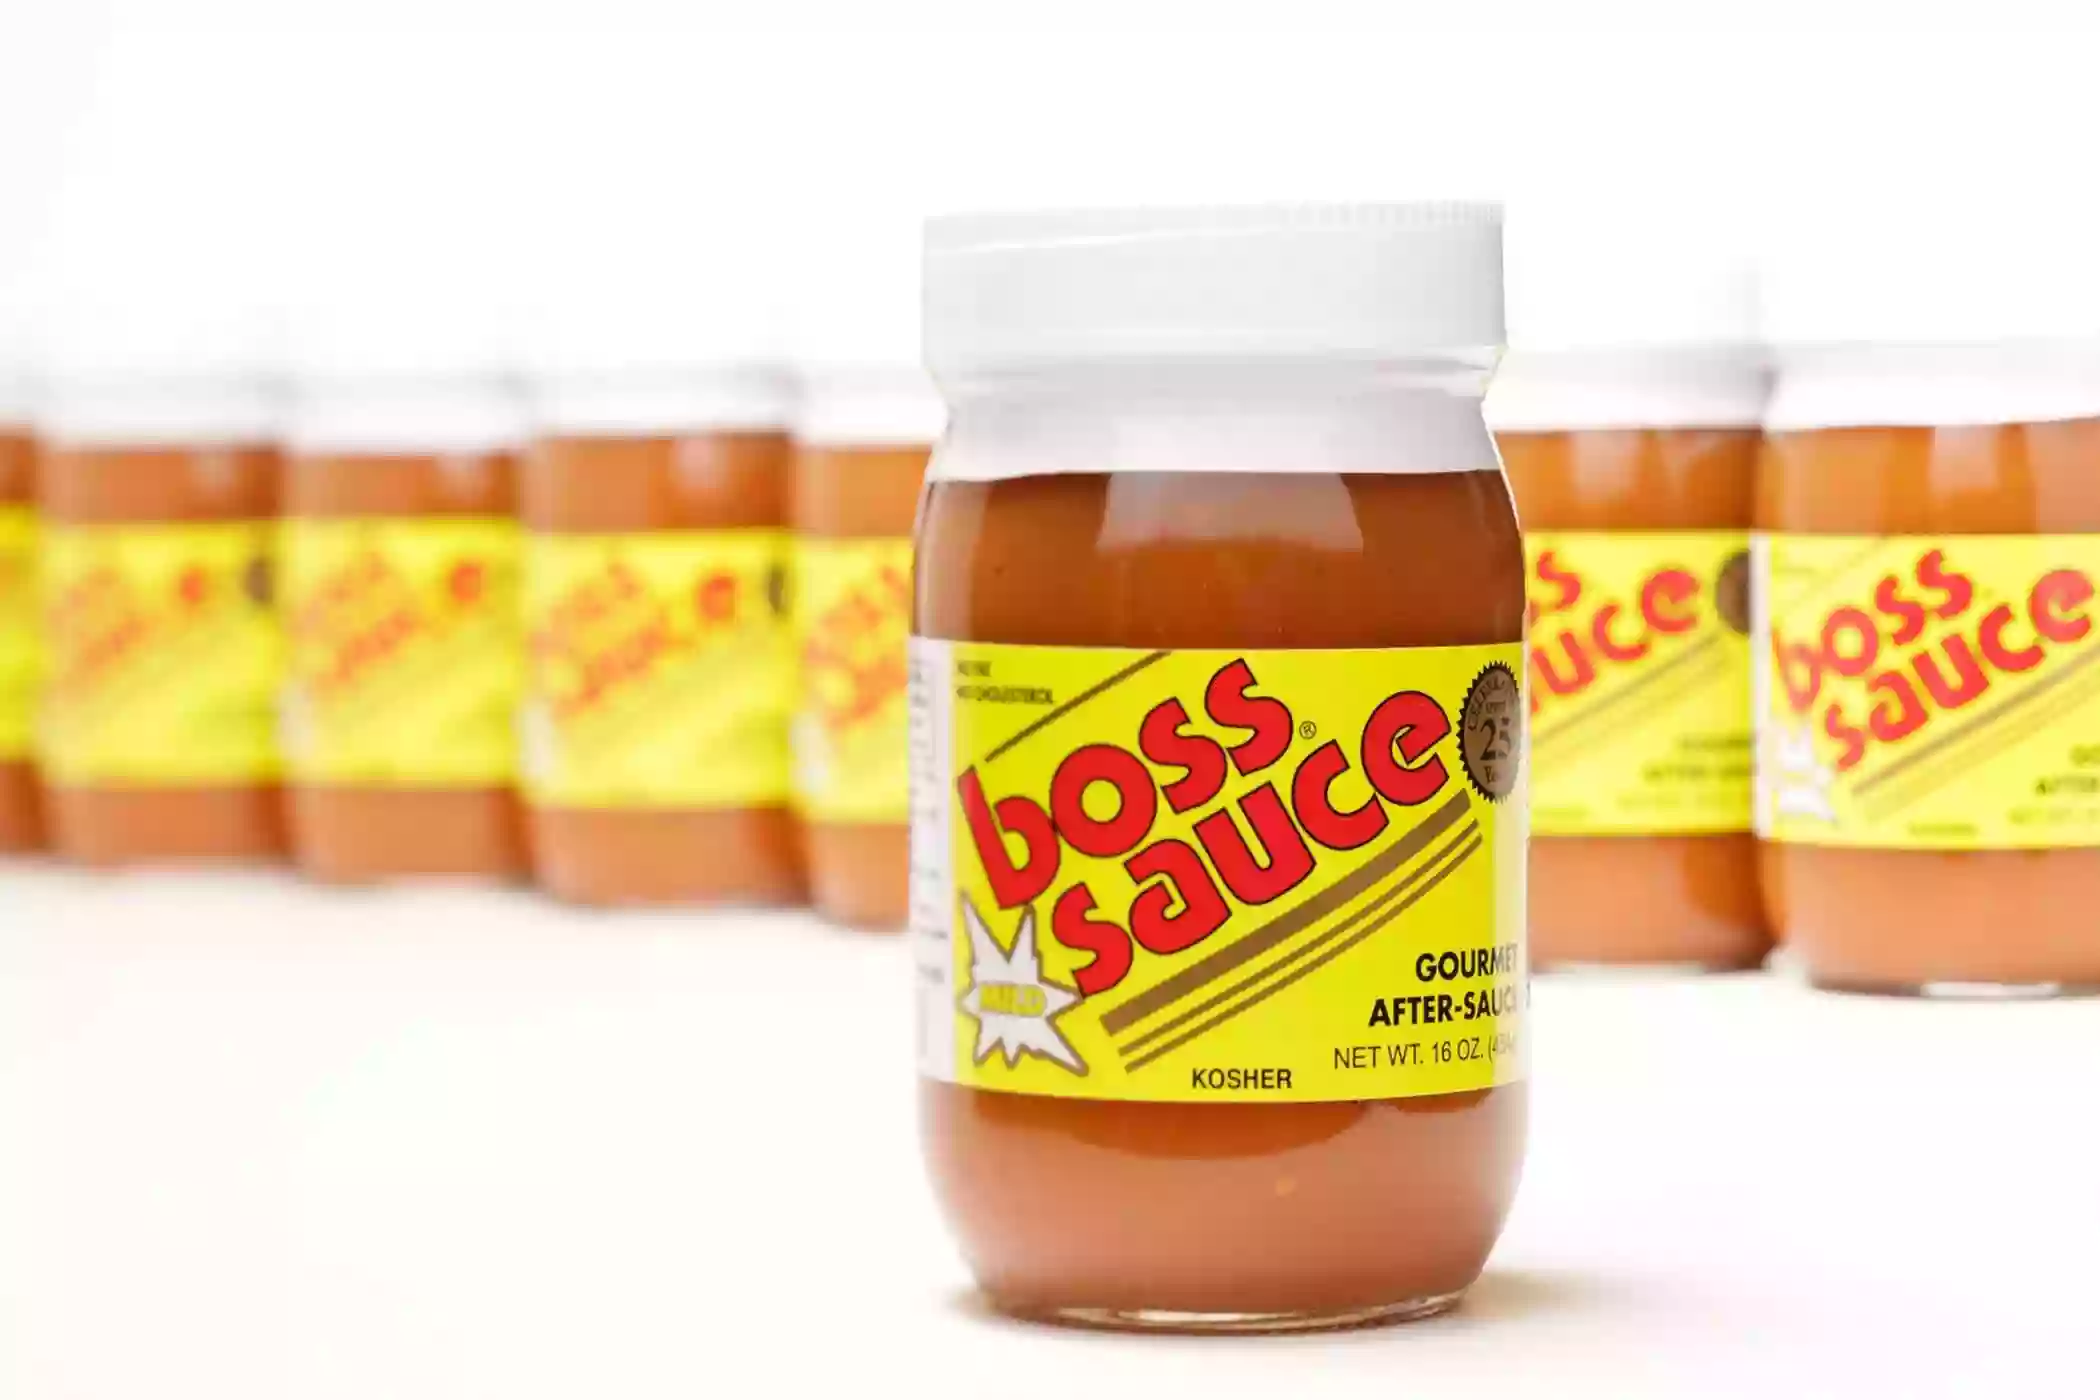 Boss Sauce